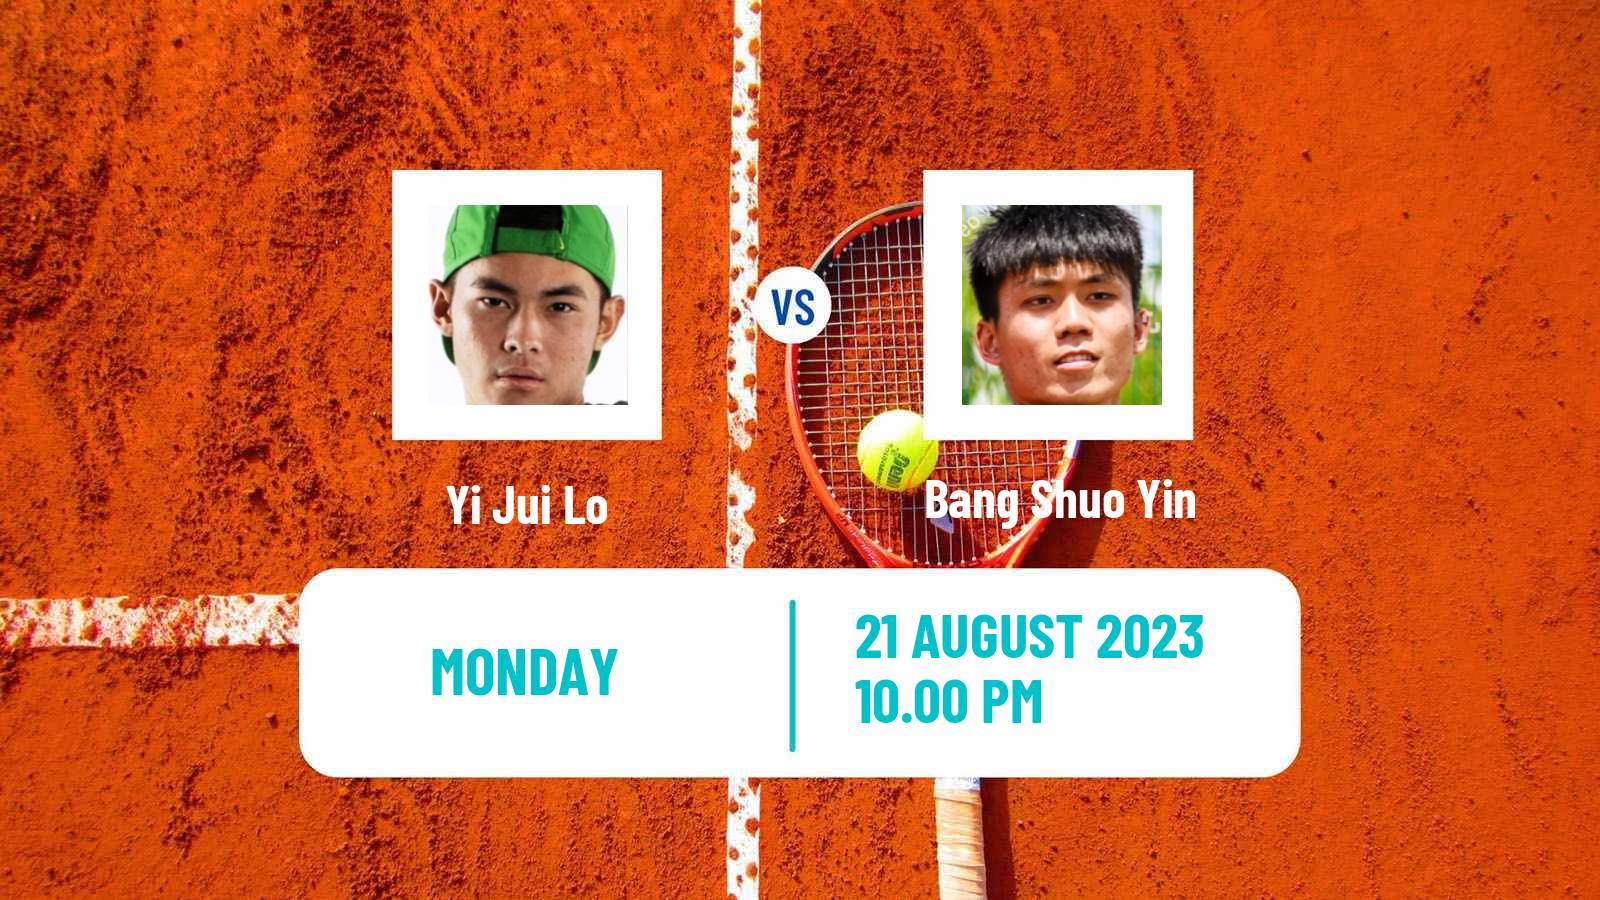 Tennis ITF M25 Tainan 2 Men Yi Jui Lo - Bang Shuo Yin